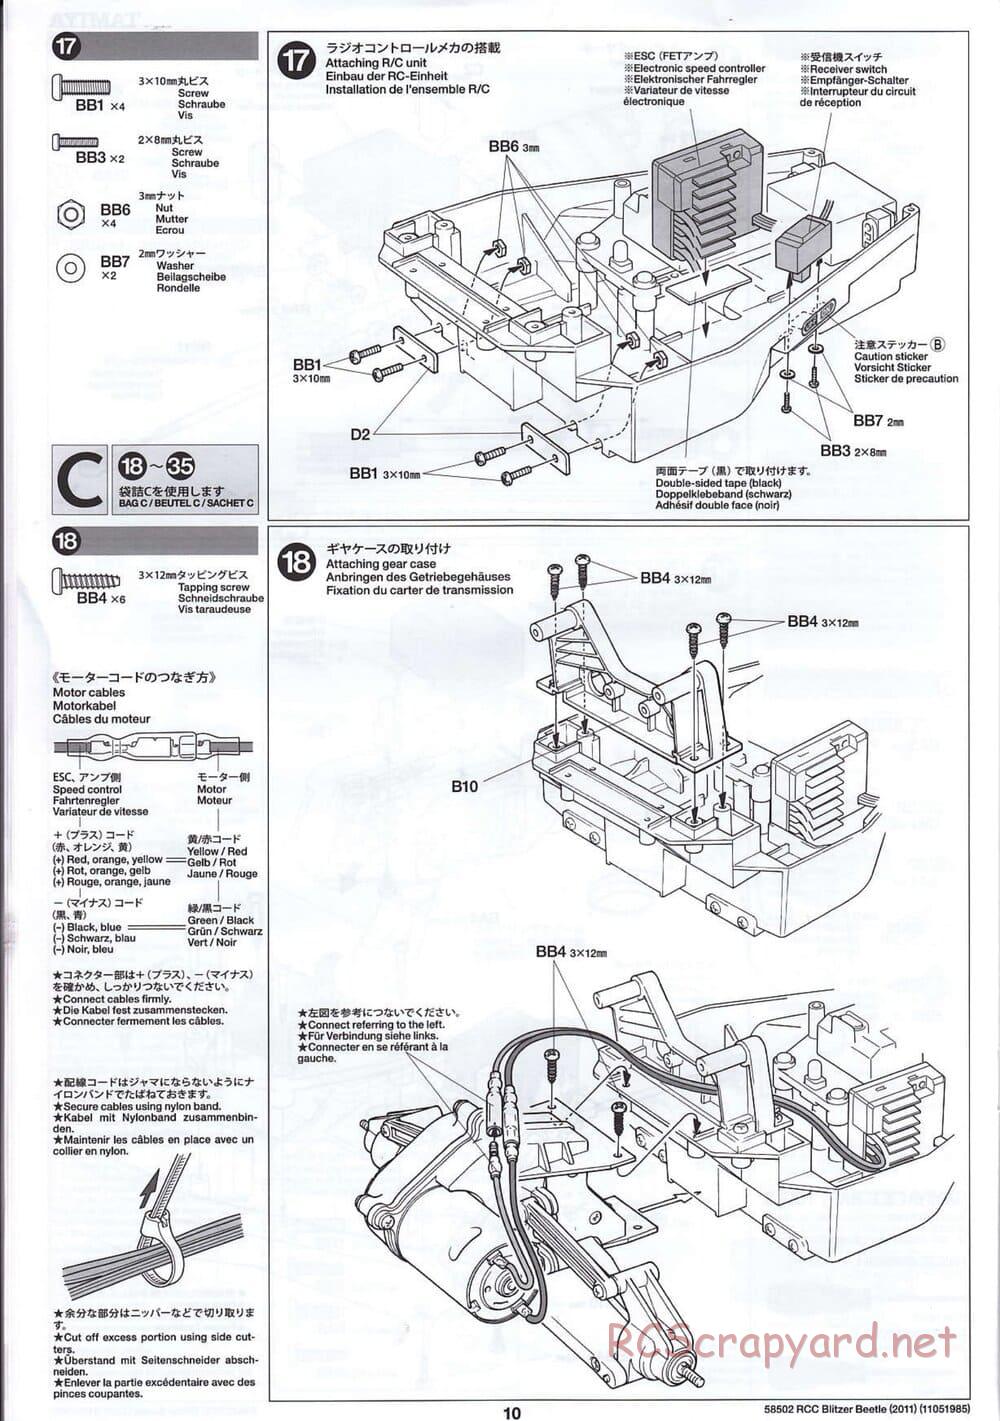 Tamiya - Blitzer Beetle 2011 - FAL Chassis - Manual - Page 10